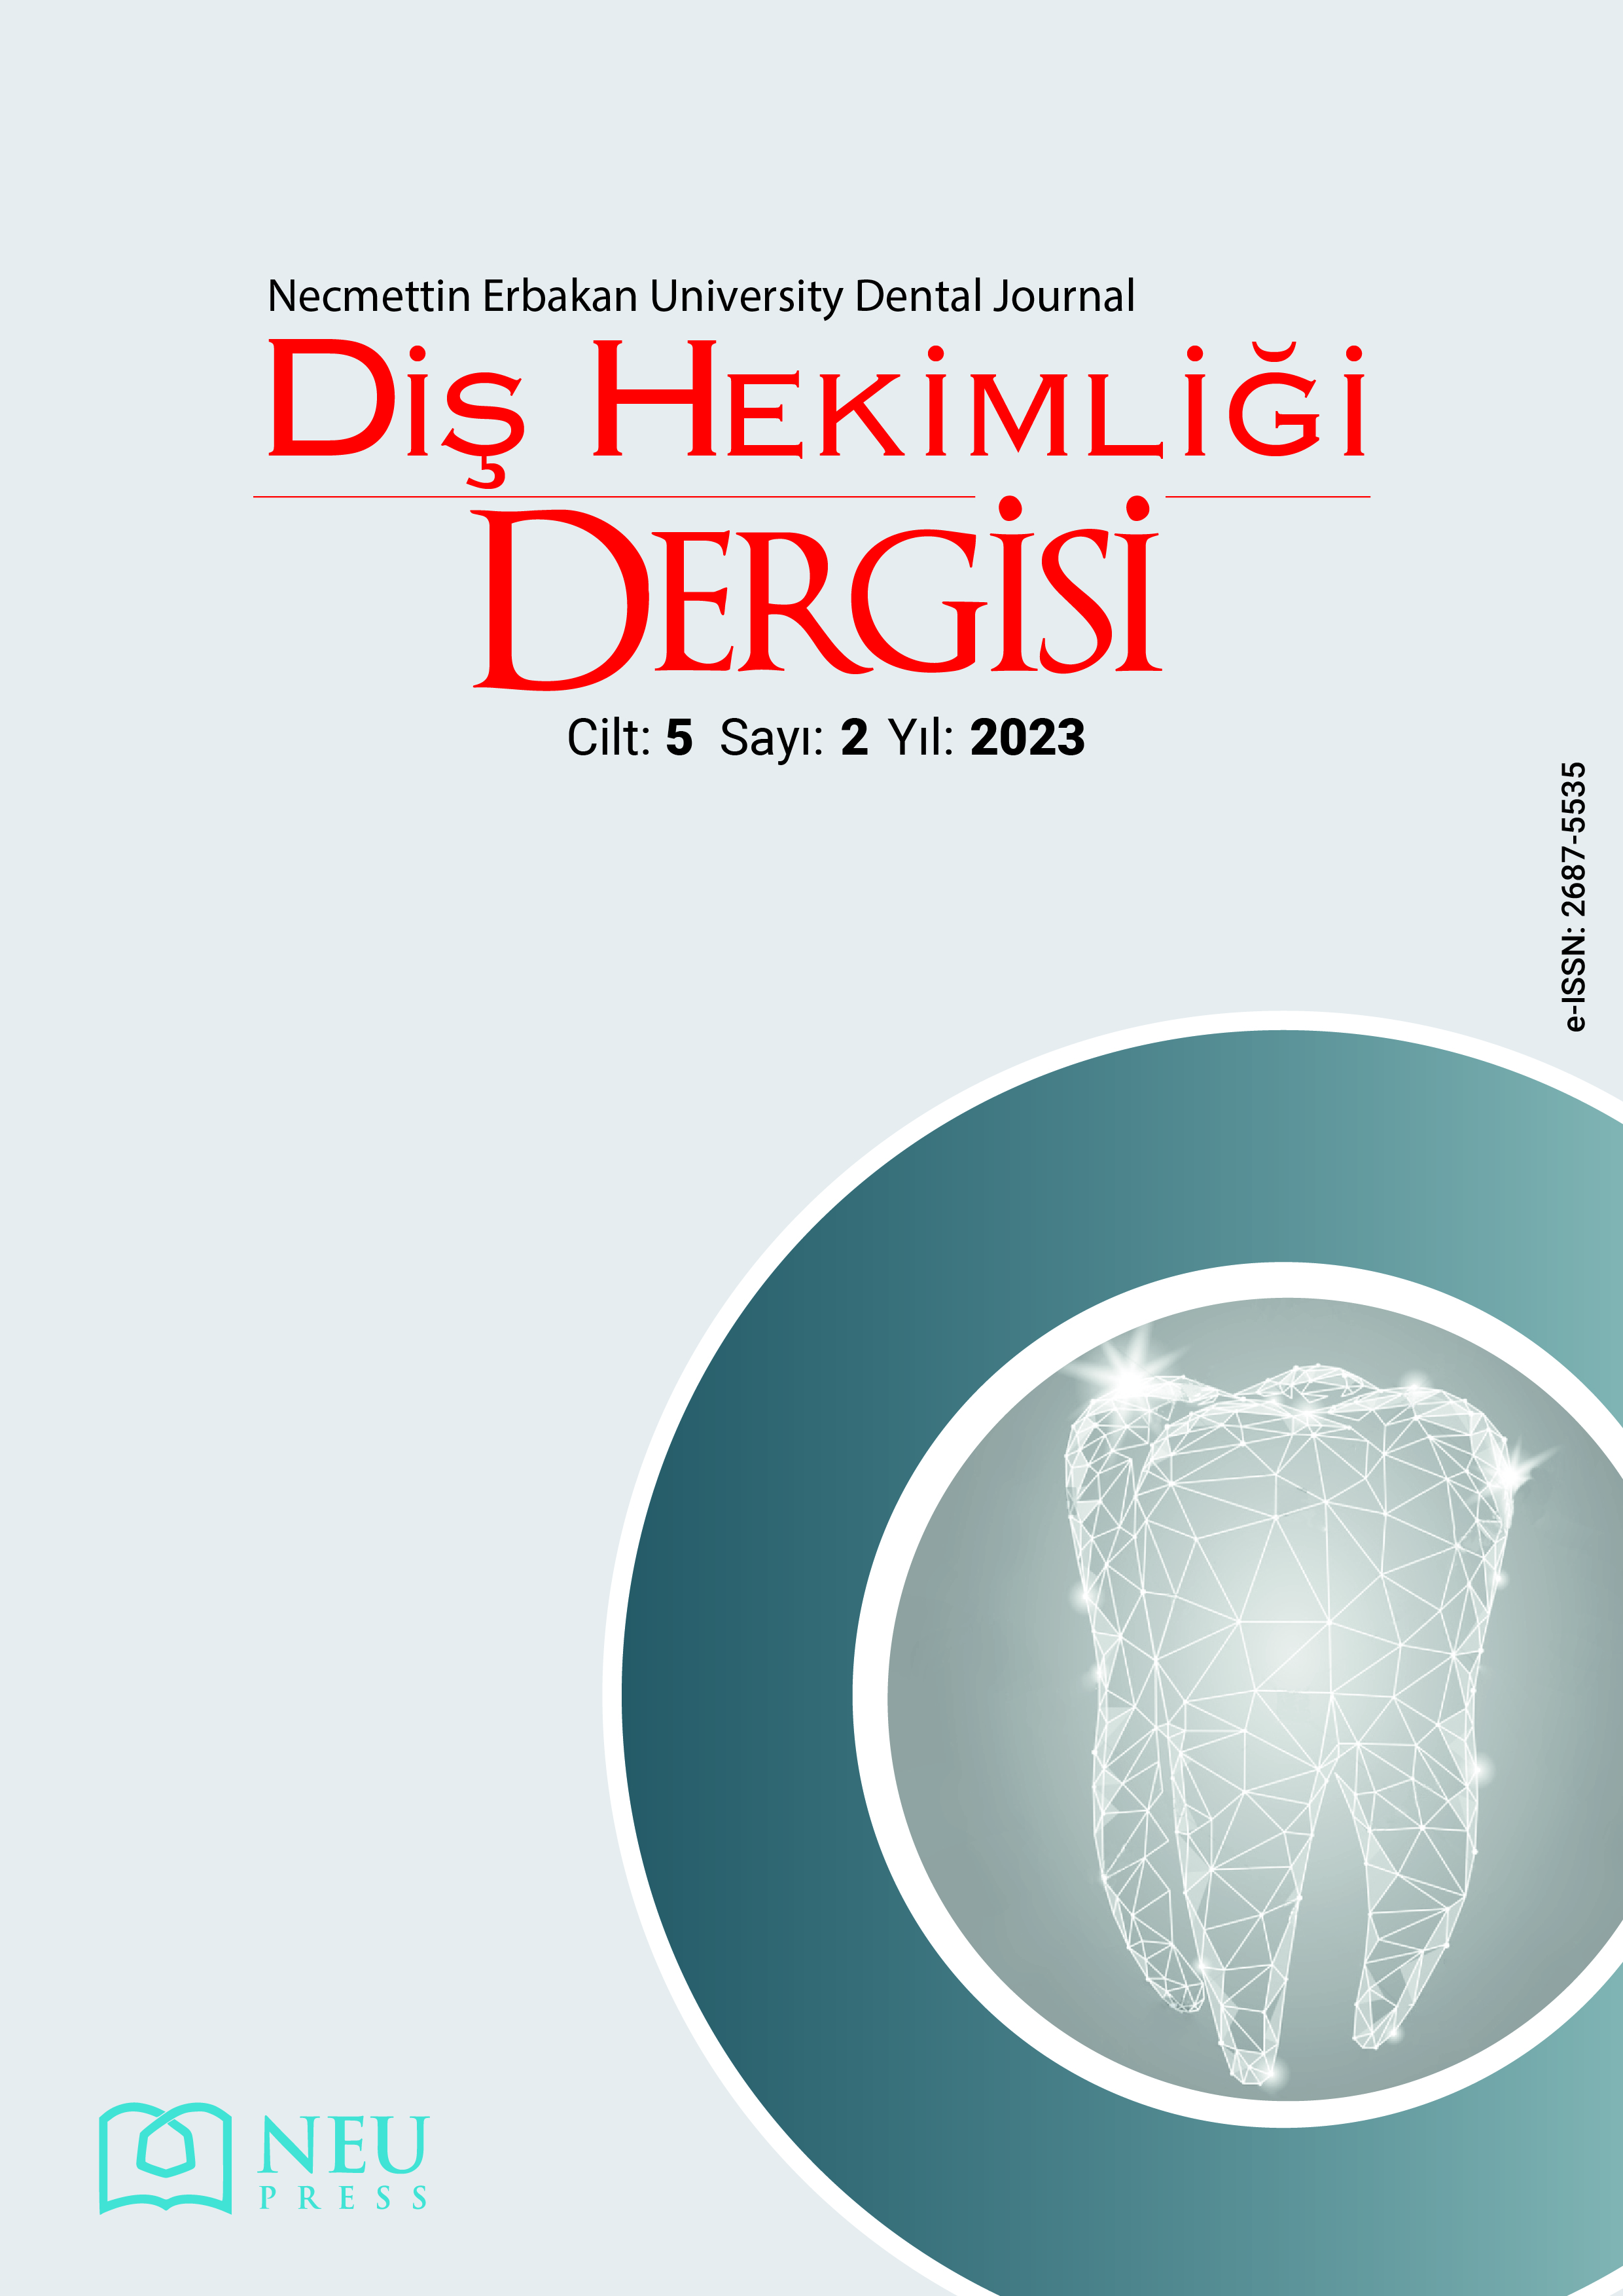 Necmettin Erbakan Üniversitesi Diş Hekimliği Dergisi